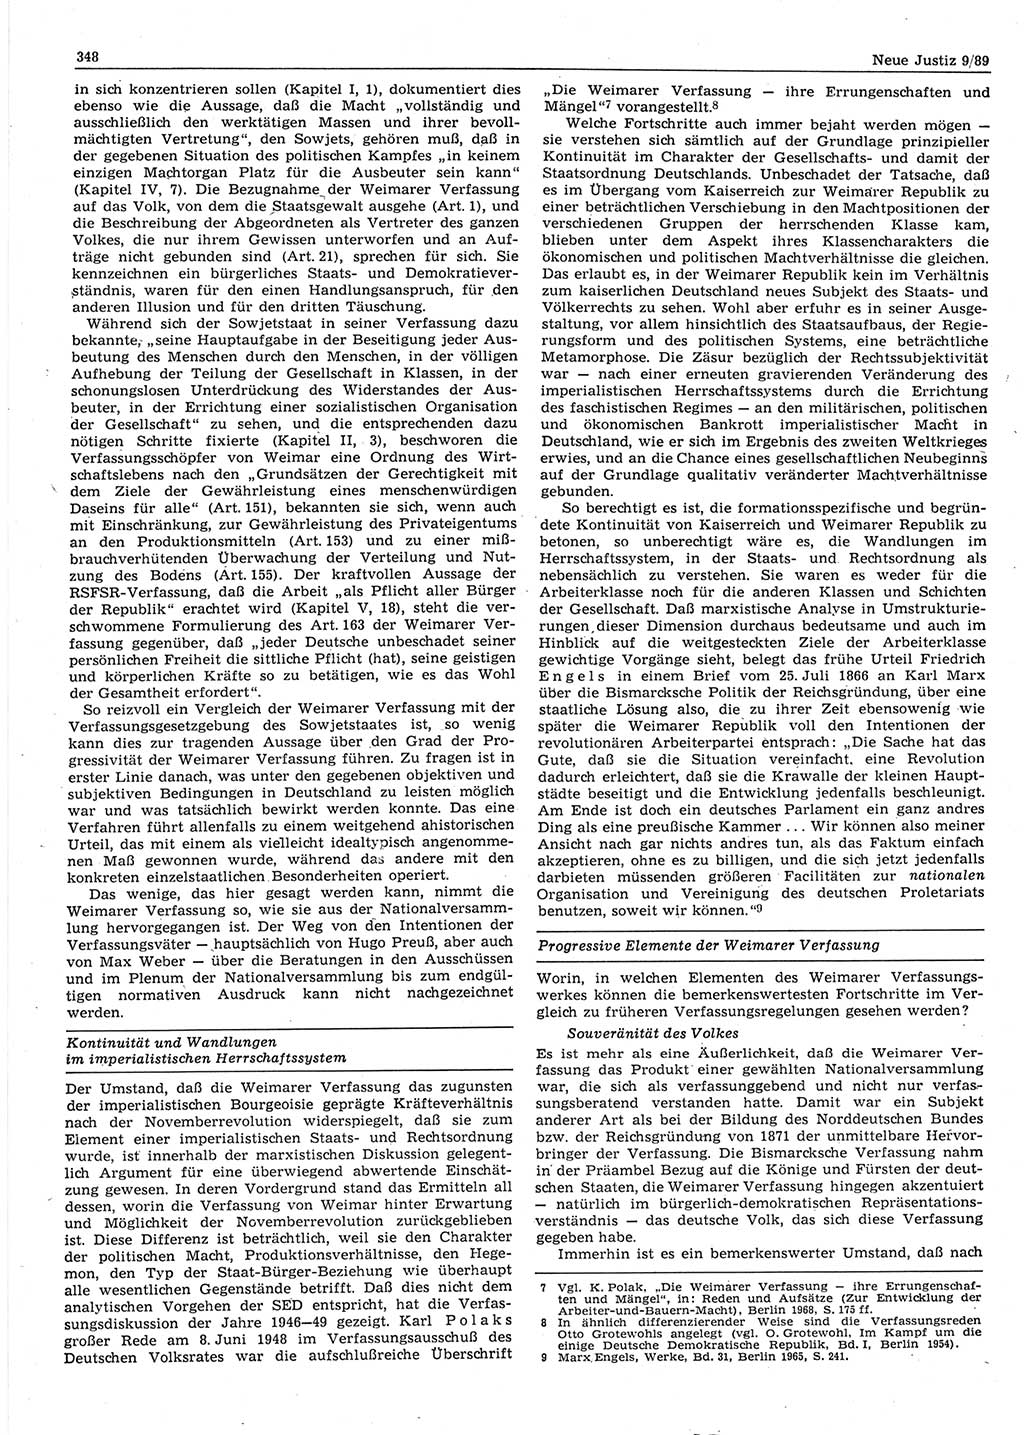 Neue Justiz (NJ), Zeitschrift für sozialistisches Recht und Gesetzlichkeit [Deutsche Demokratische Republik (DDR)], 43. Jahrgang 1989, Seite 348 (NJ DDR 1989, S. 348)